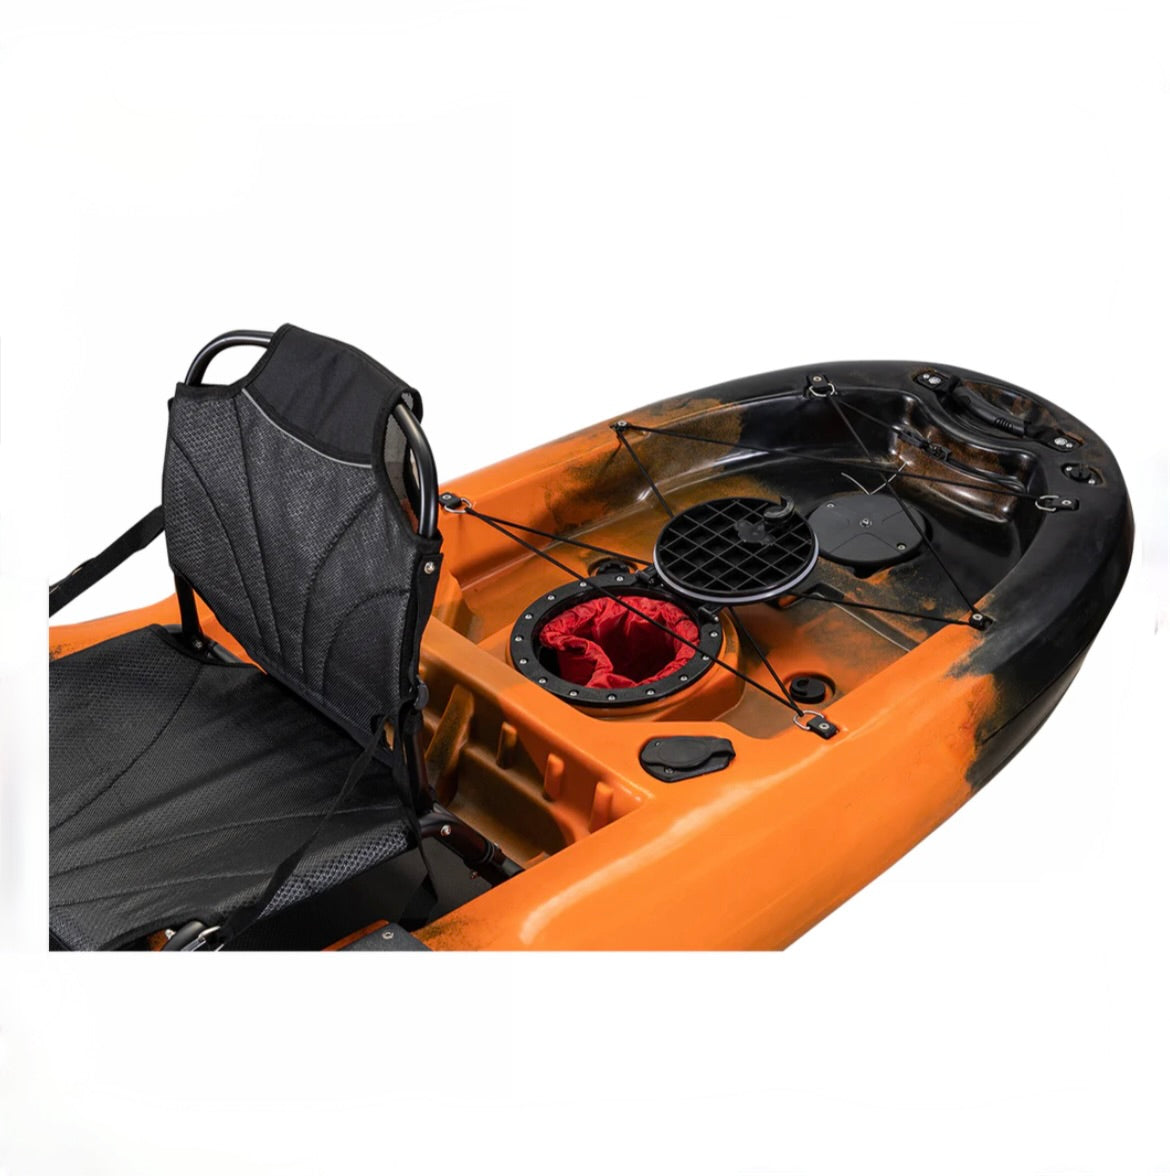 PFS Premium High Speed Kayak Pedal Drive Kit